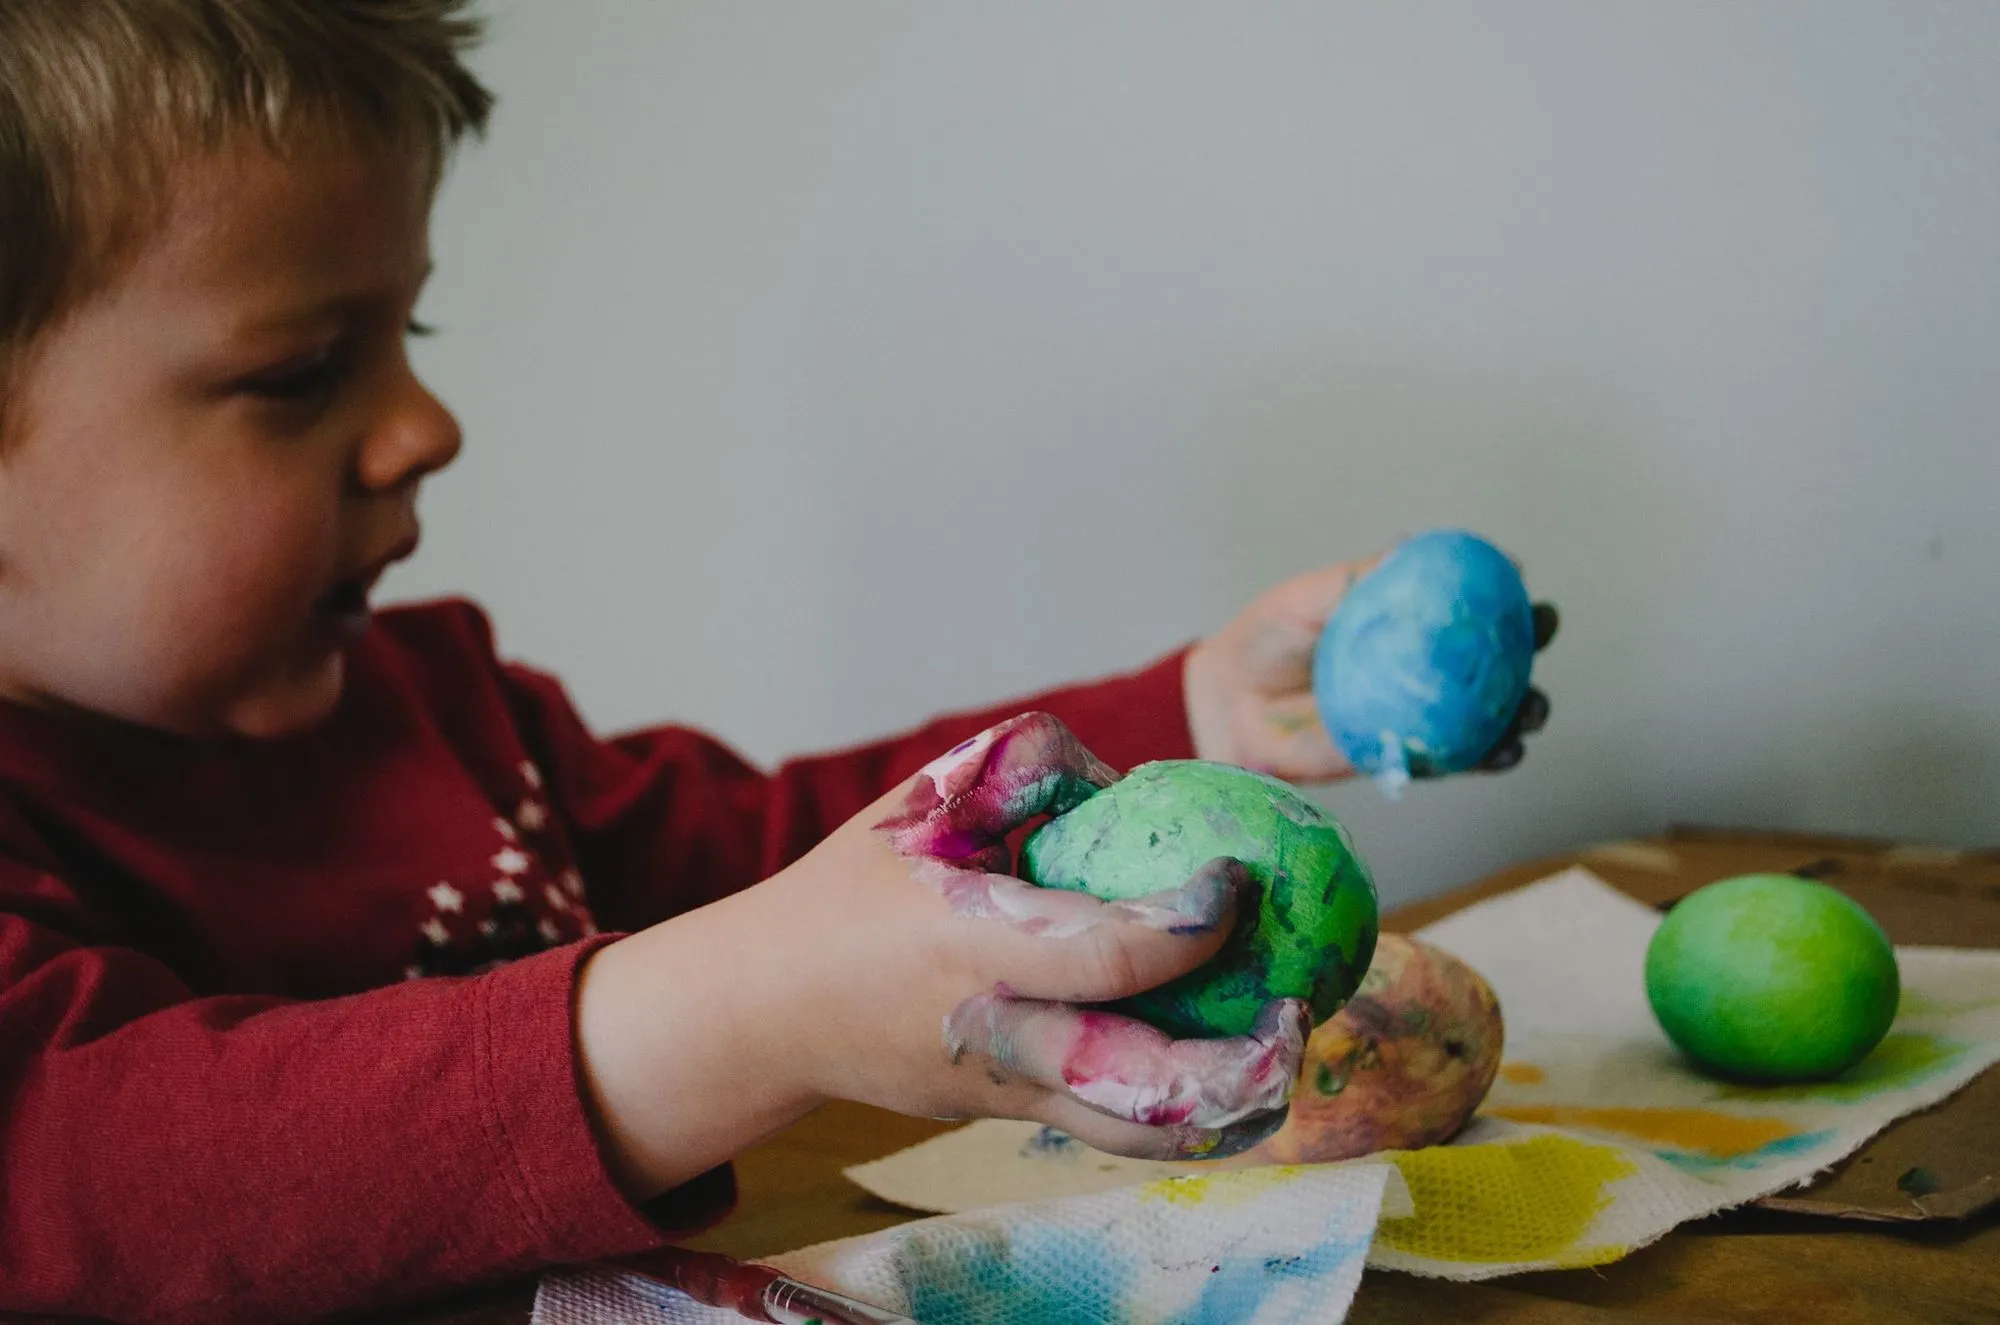 menino segurando bolas de massa de cores diferentes